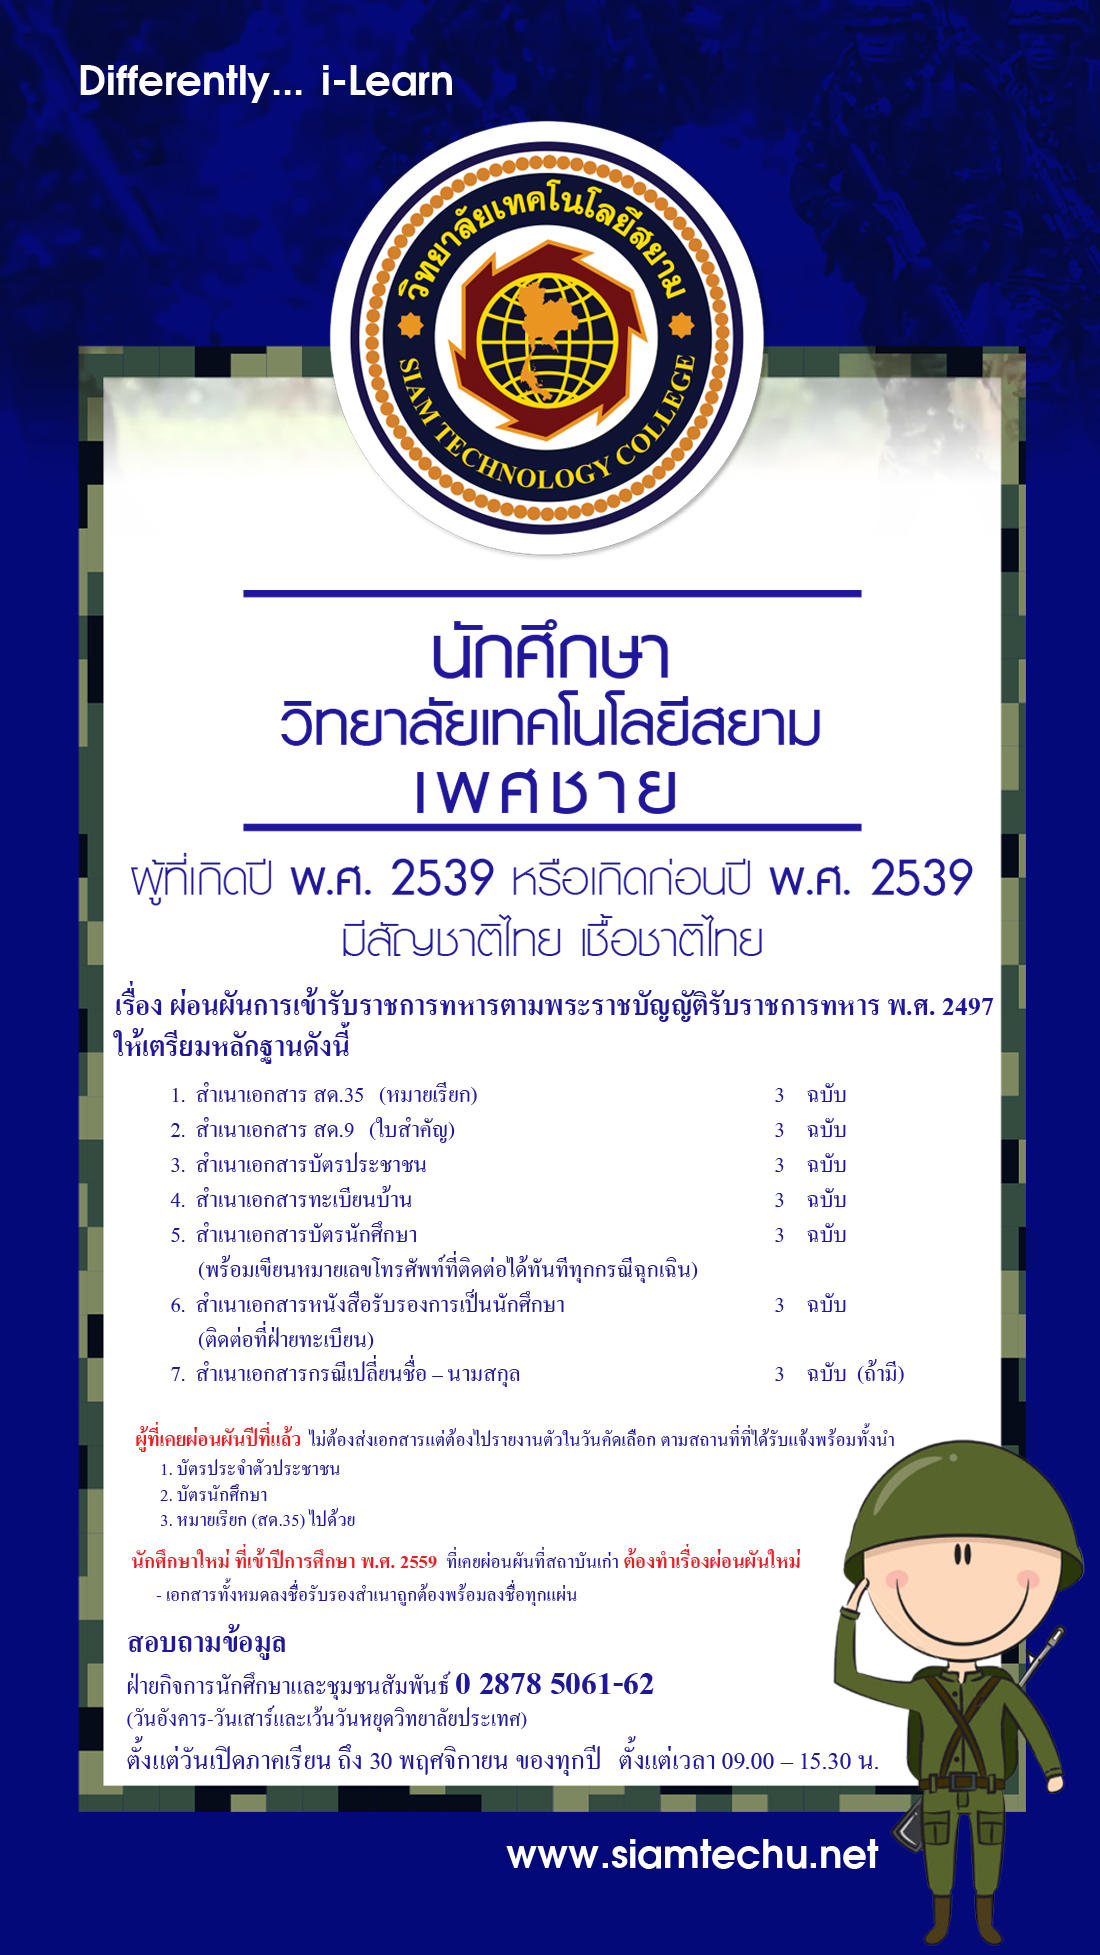 ประกาศเรื่อง การผ่อนผันการเข้ารับราชการทหารตามพระราชบัญญัติรับราชการทหาร พ.ศ. 2497 สำหรับเพศชายผู้ที่เกิดปี 2539หรือก่อน 2539 มีสัญชาติไทยเชื้อชาติไทย รายละเอียดดังนี้